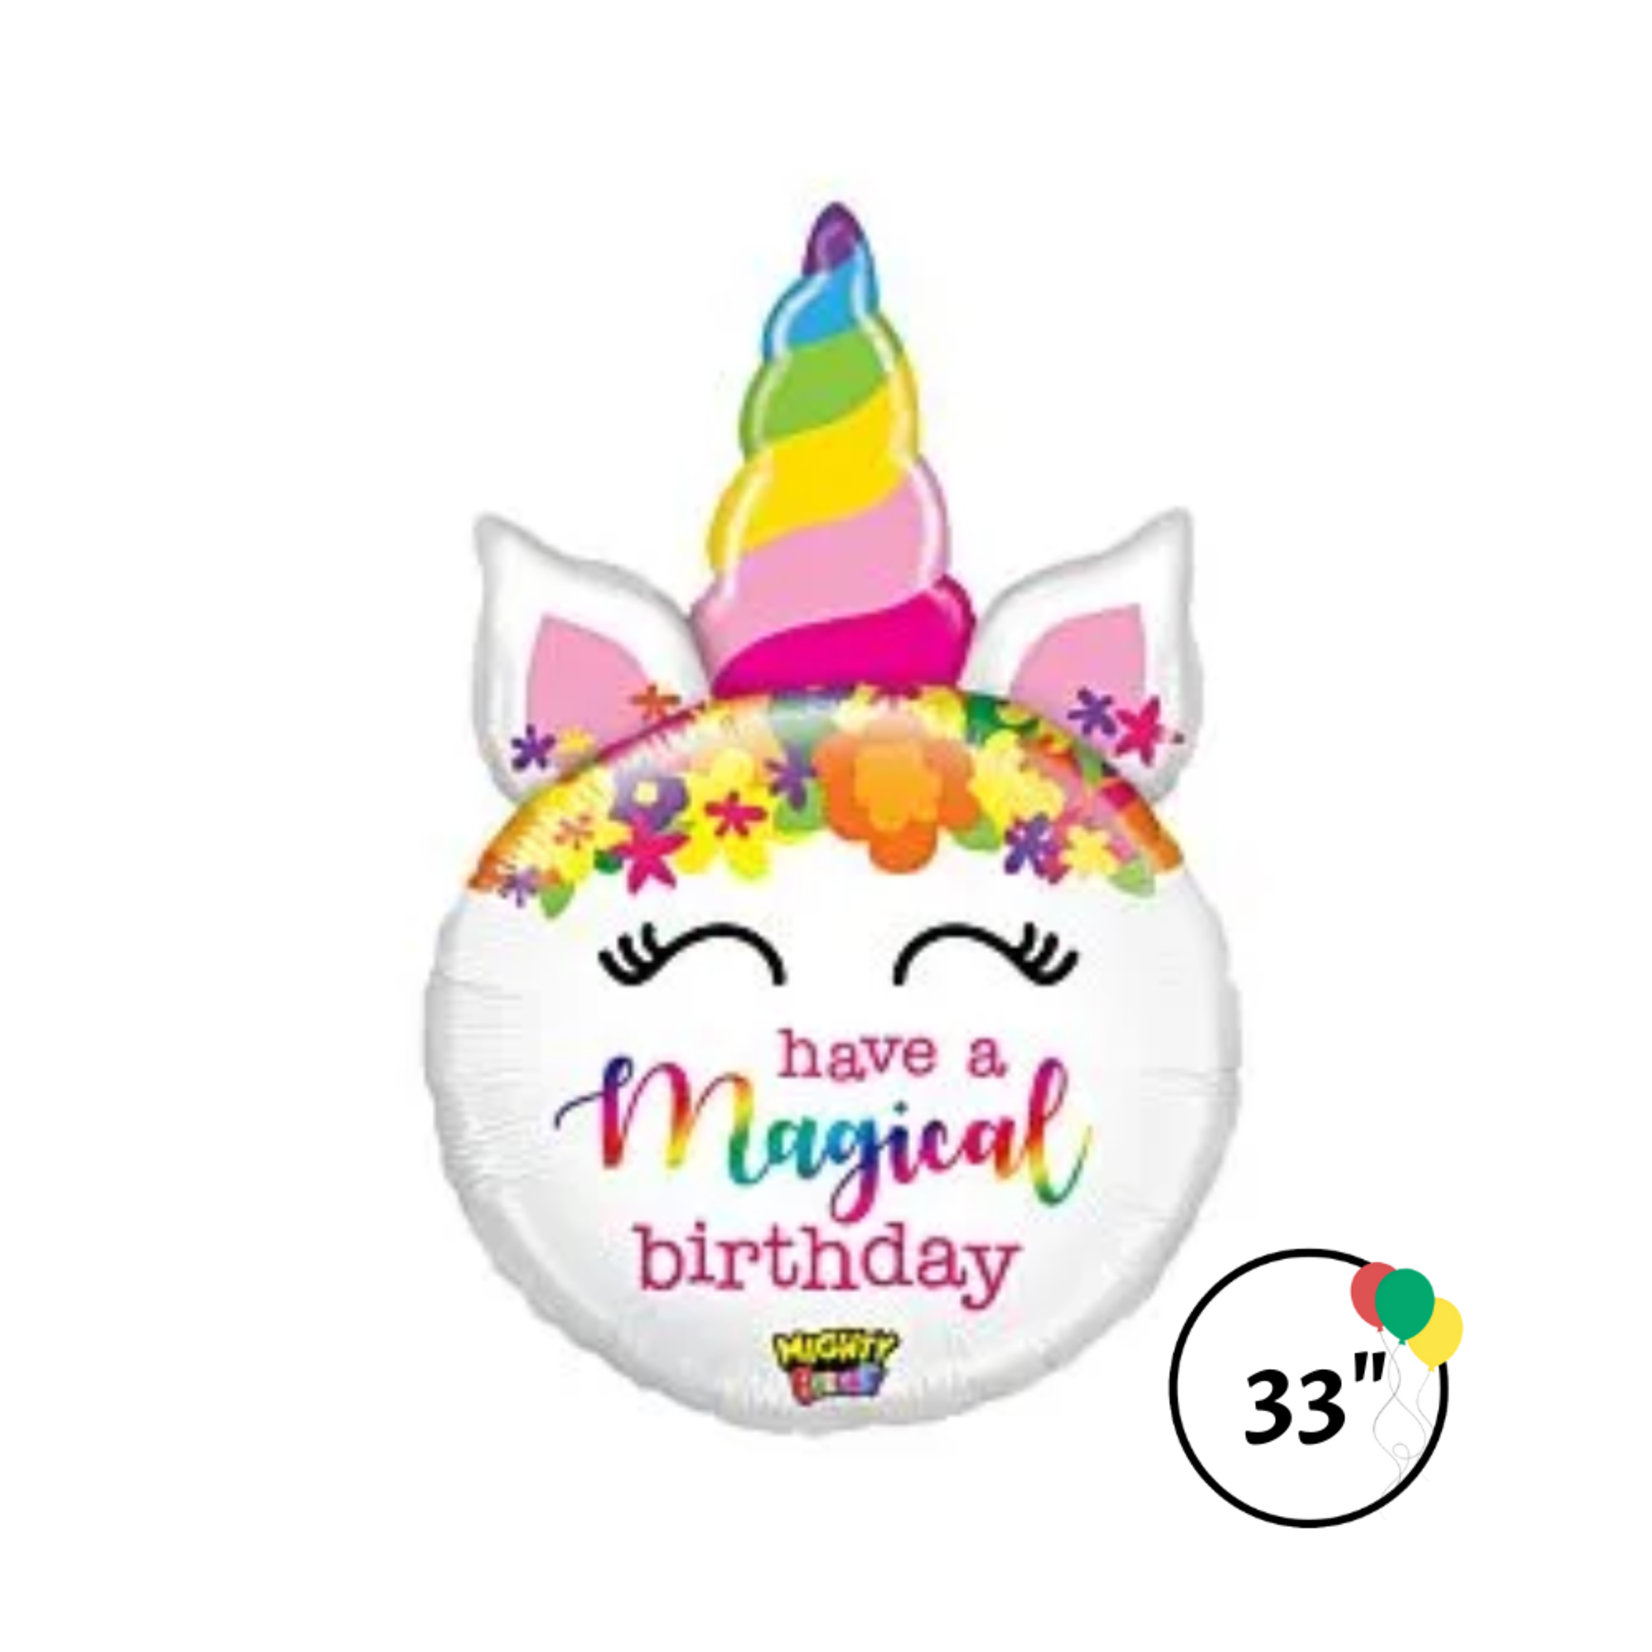 Betallic 33" Might Bday Unicorn Balloon